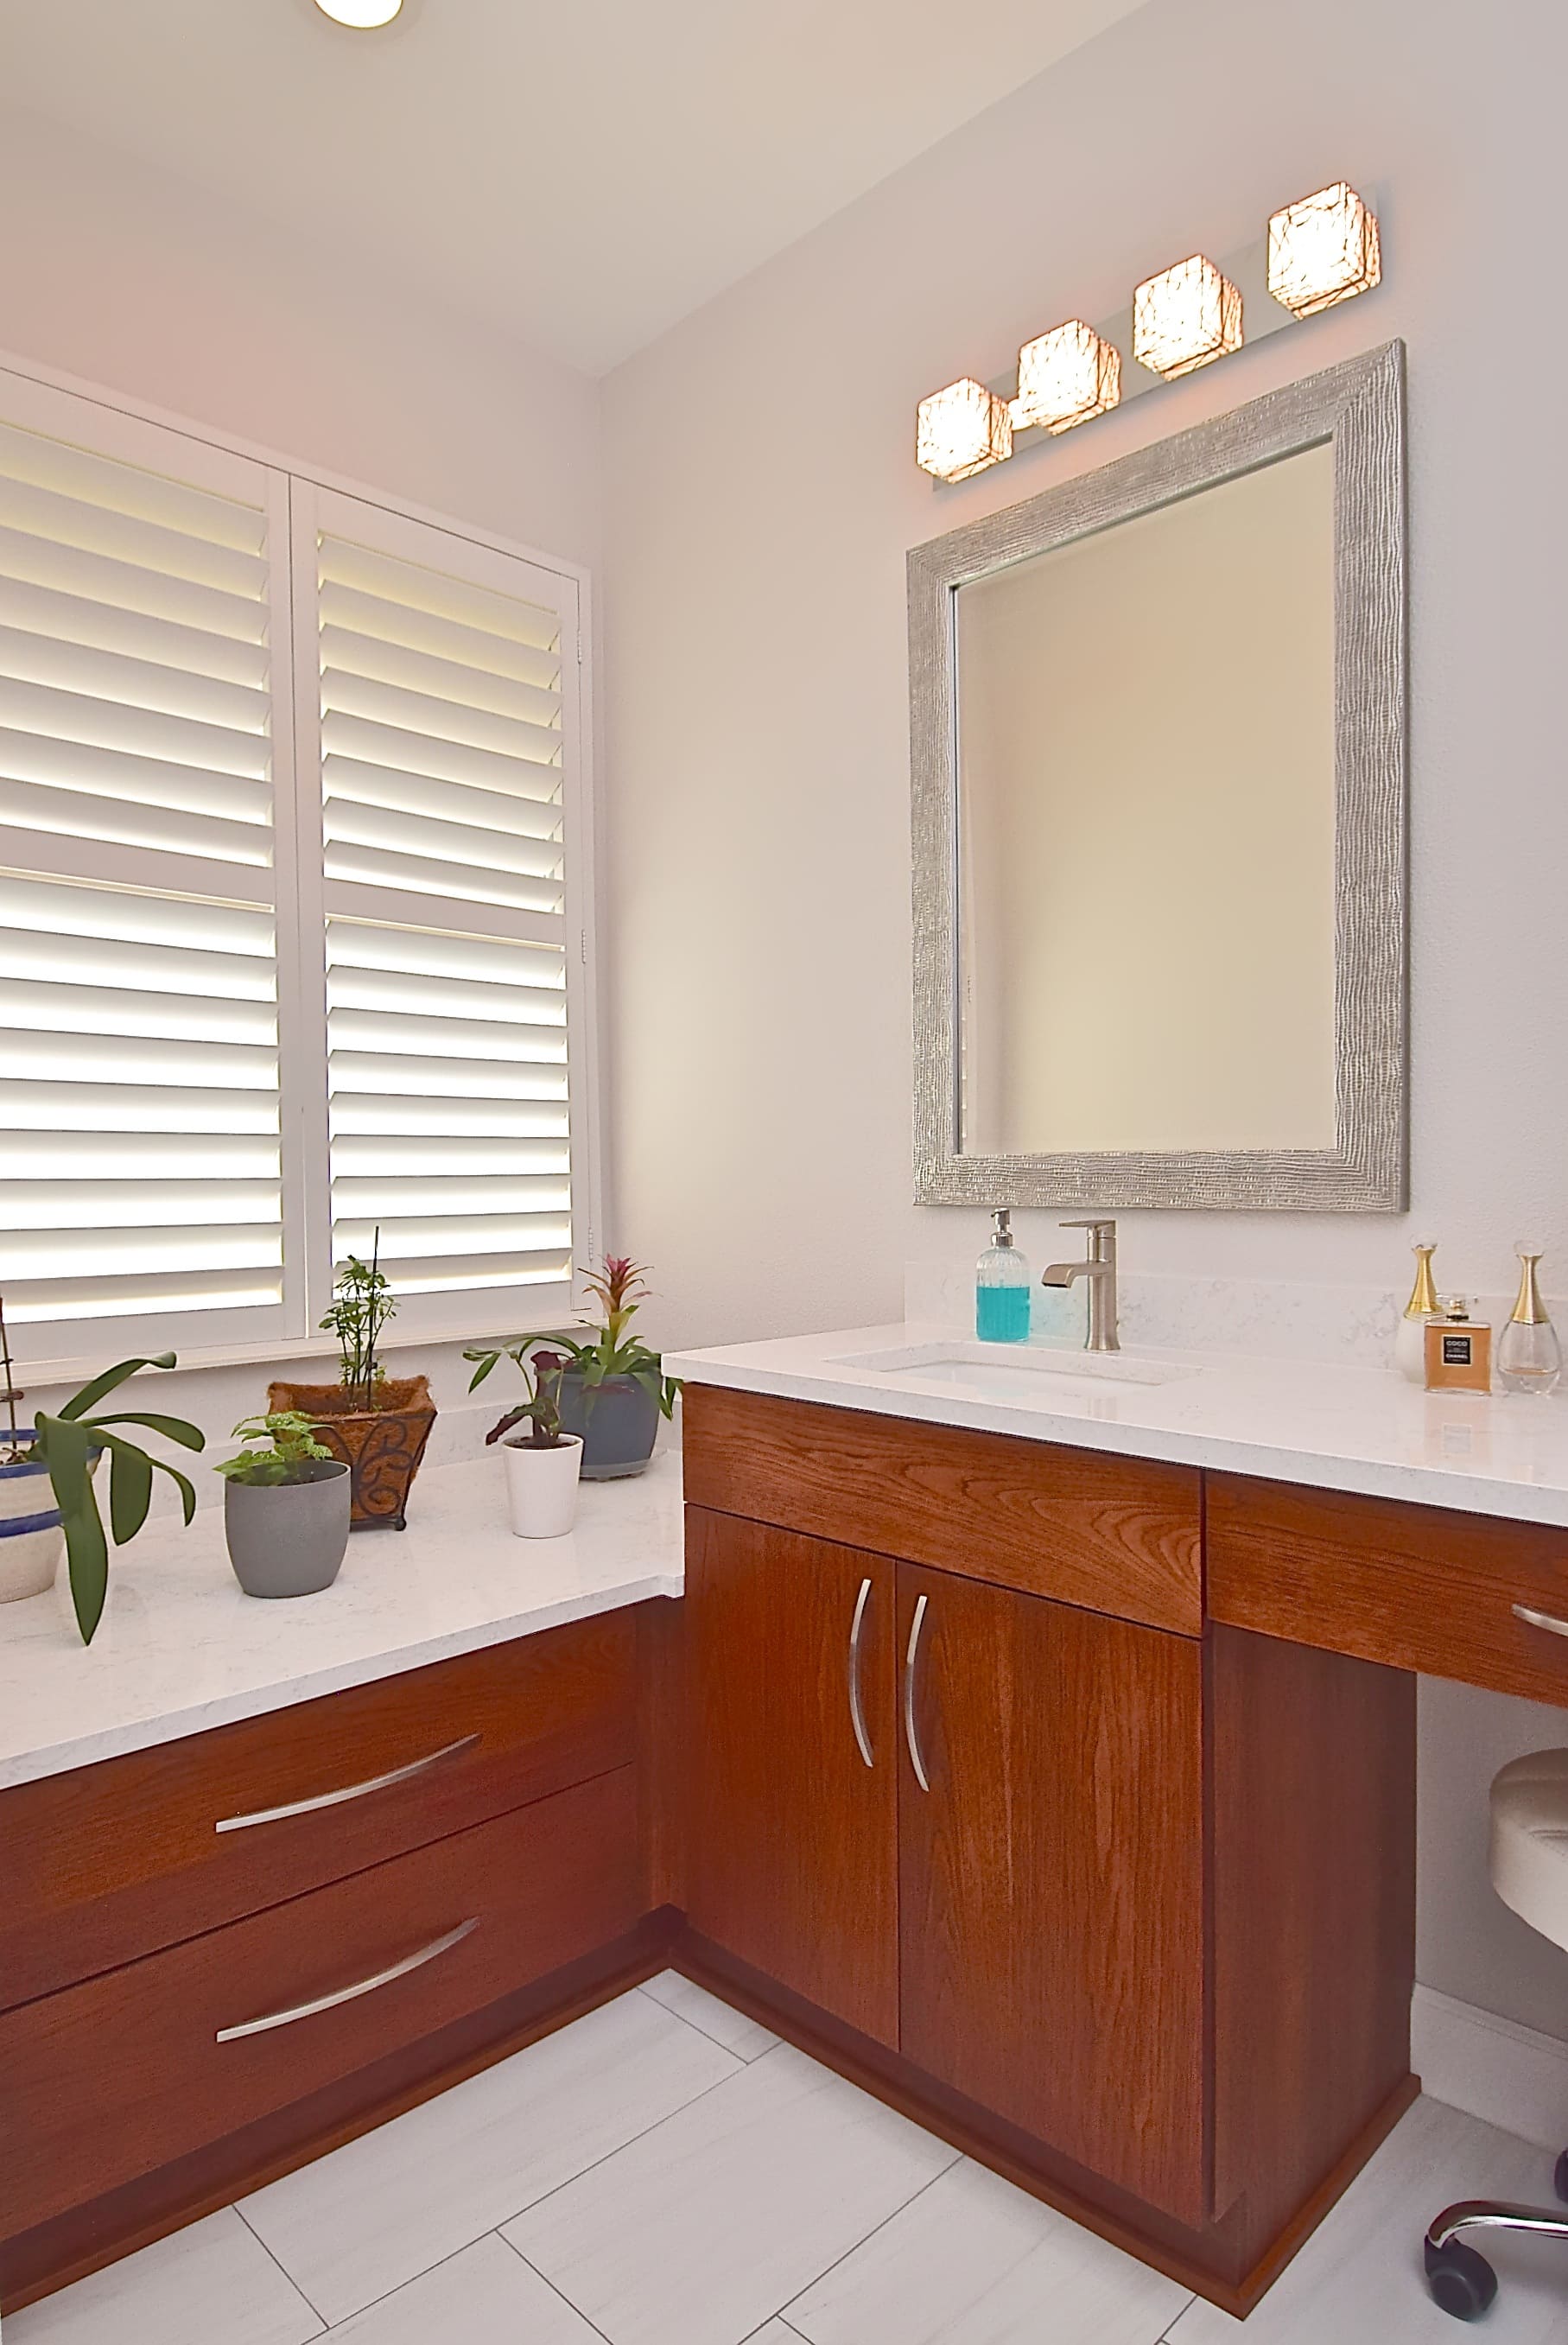 Lower Warm Wooden Bathroom Vanity Cabinet Ideas for Sarasota Remodels Franz